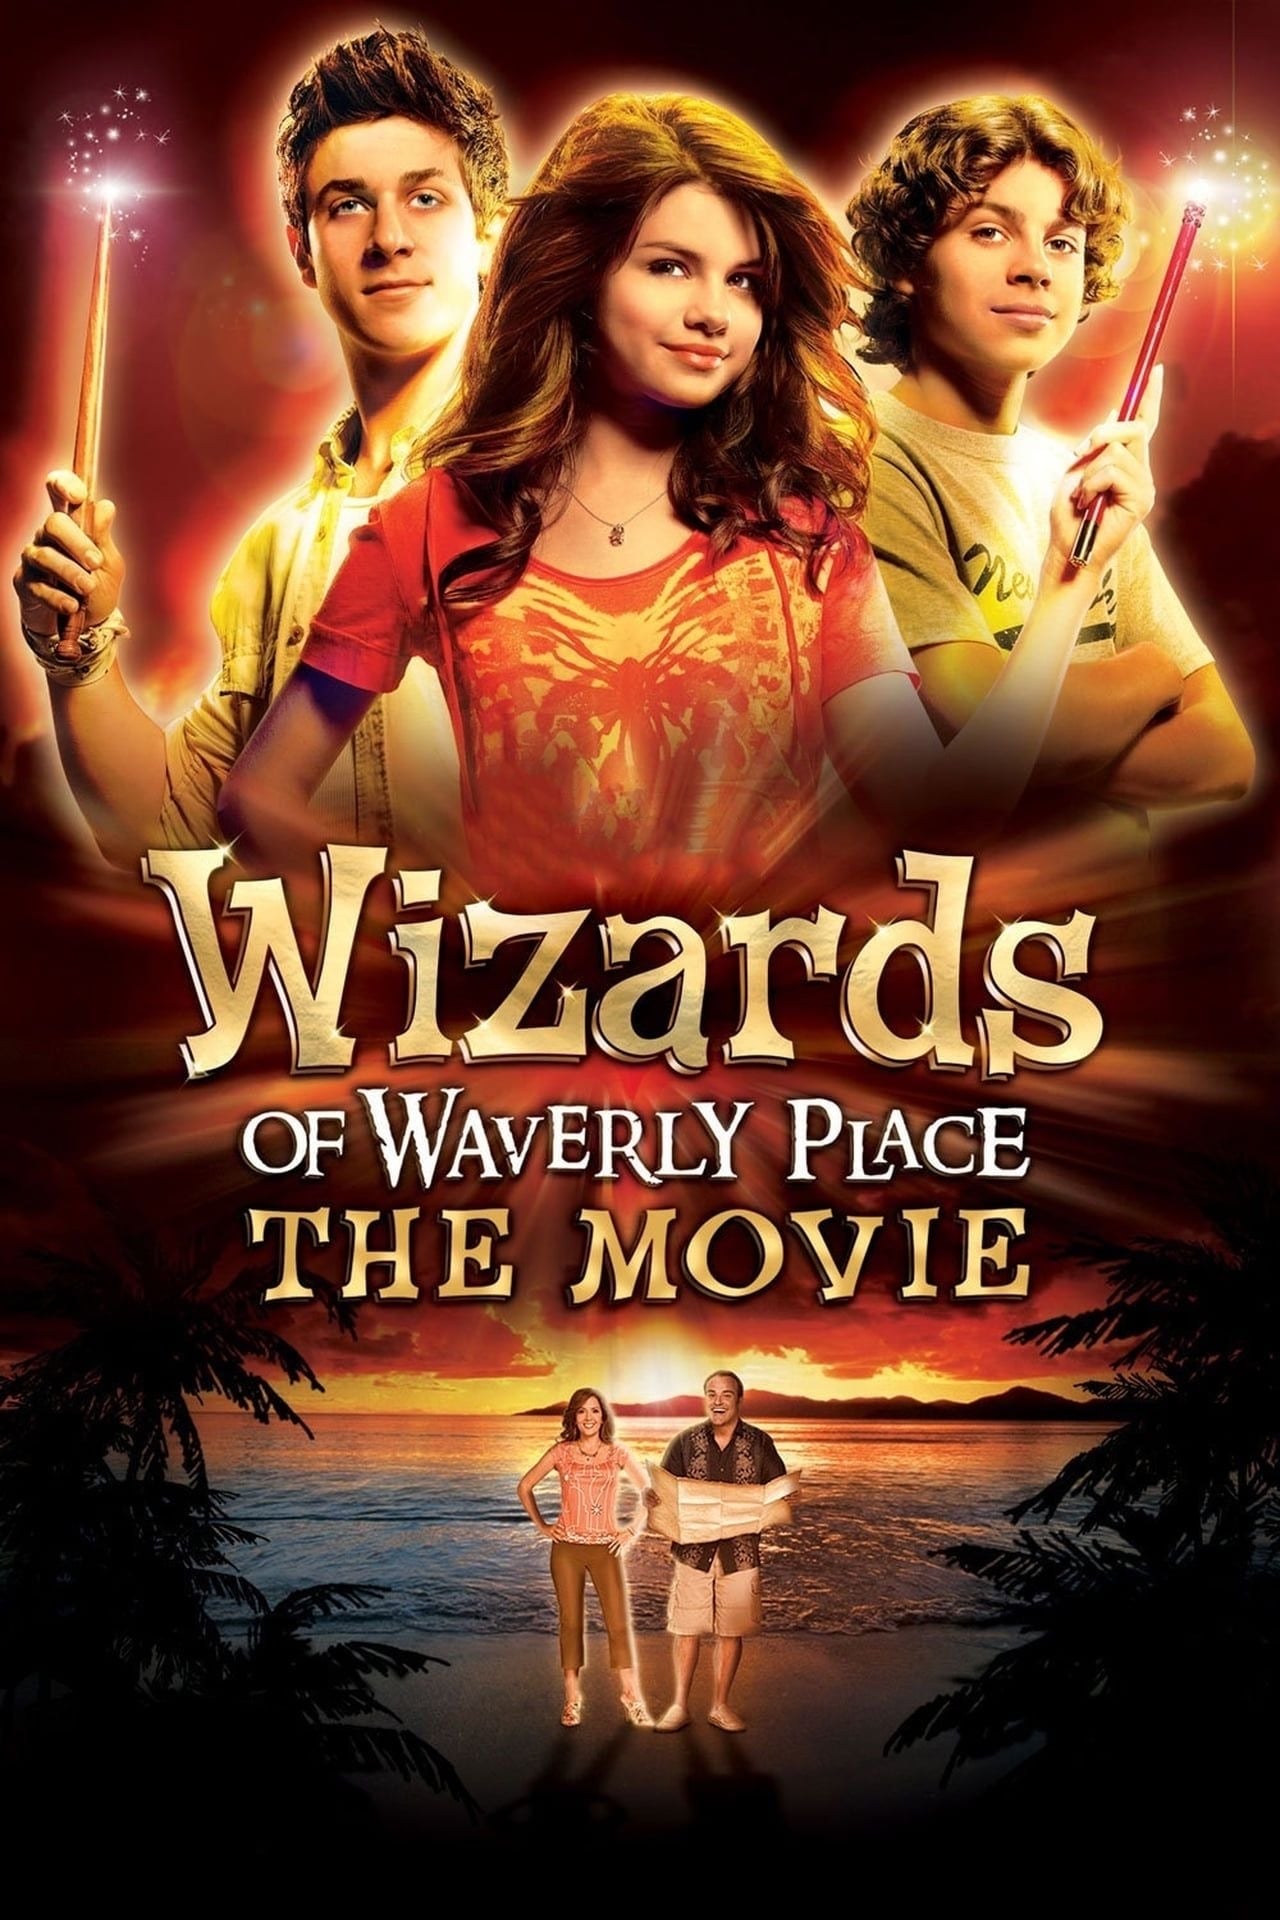 ჯადოქრები უეივერლიდან / Wizards of Waverly Place: The Movie (Jadoqrebi Ueiverlidan Qartulad) ქართულად